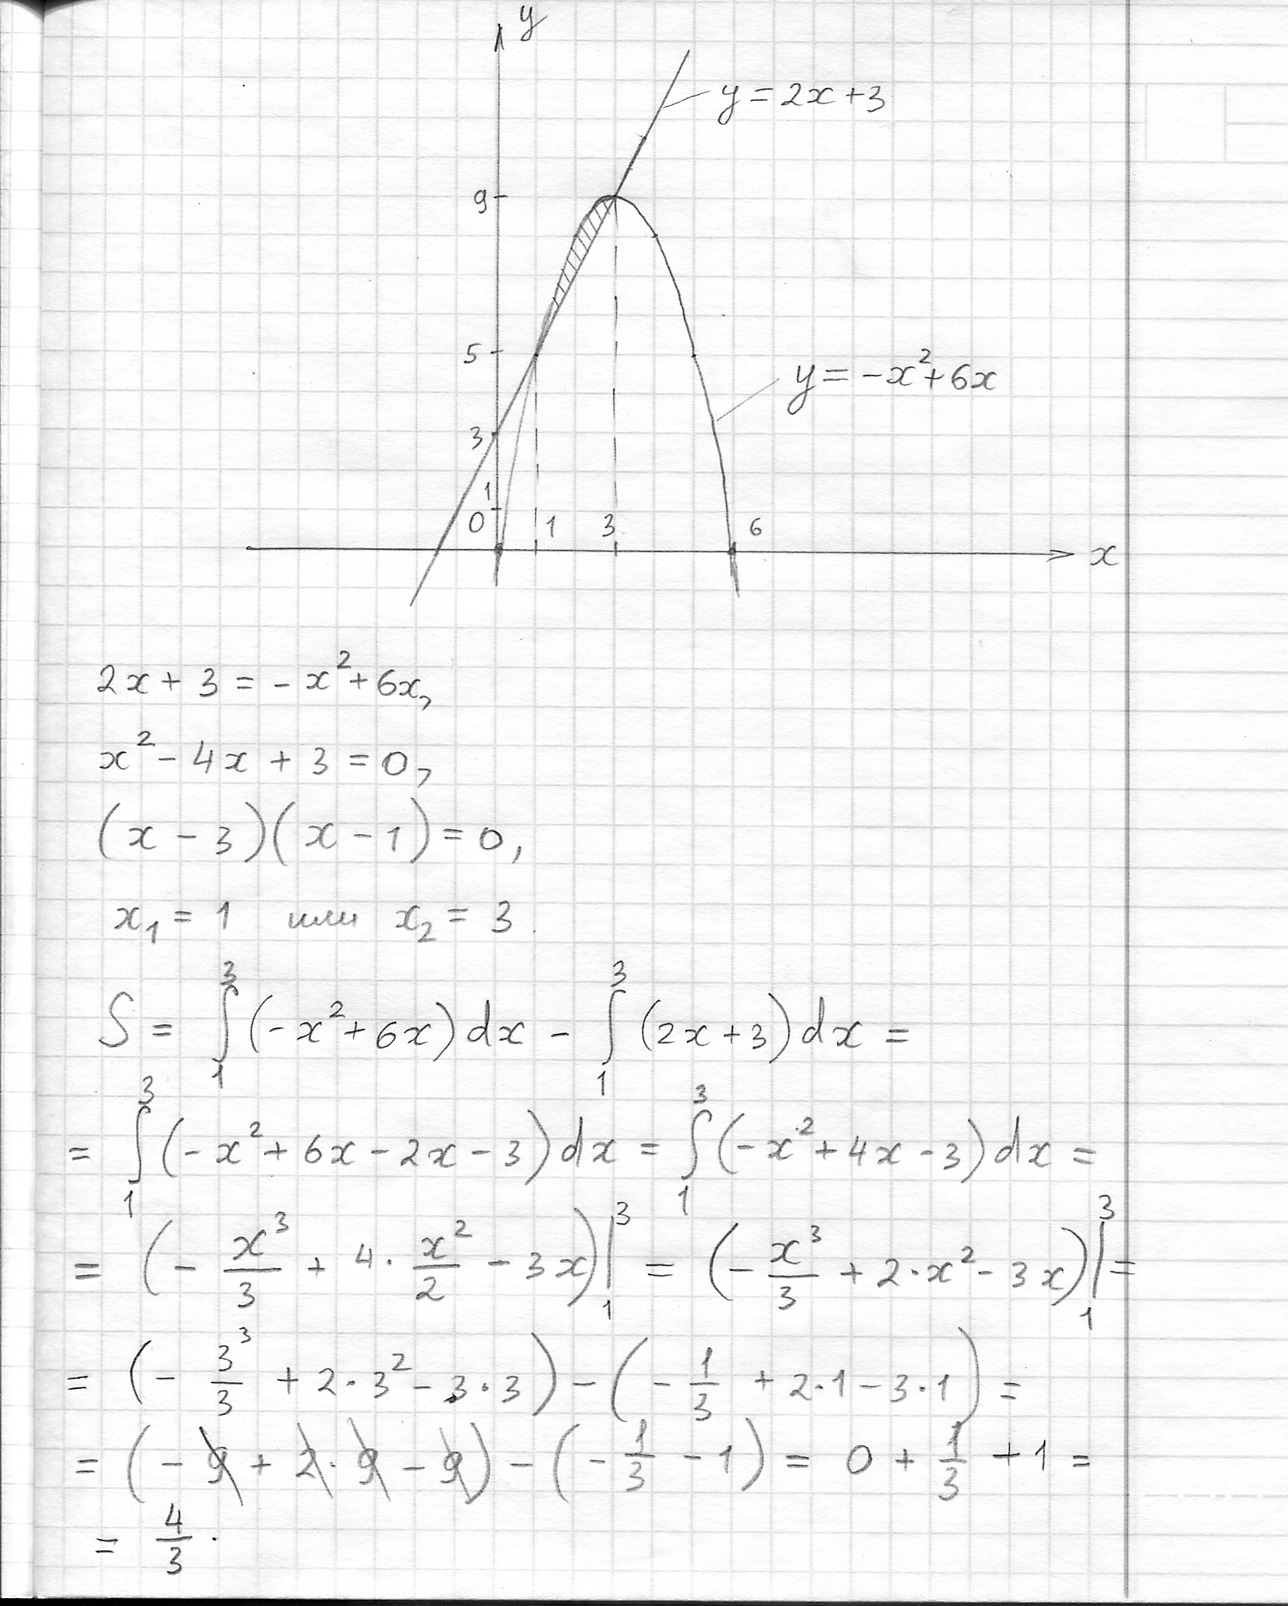 Площадь фигуры y x 2 1. У = X:2 Y=X+2 площадь фигуры. Вычислить площадь фигуры ограниченной линиями y=4x-x^2, x=5. Вычислите площадь фигуры ограниченной линиями y=x^2+2 y=4-x^2. Вычислите площадь фигуры ограниченной линиями y=-x2+4x-3.